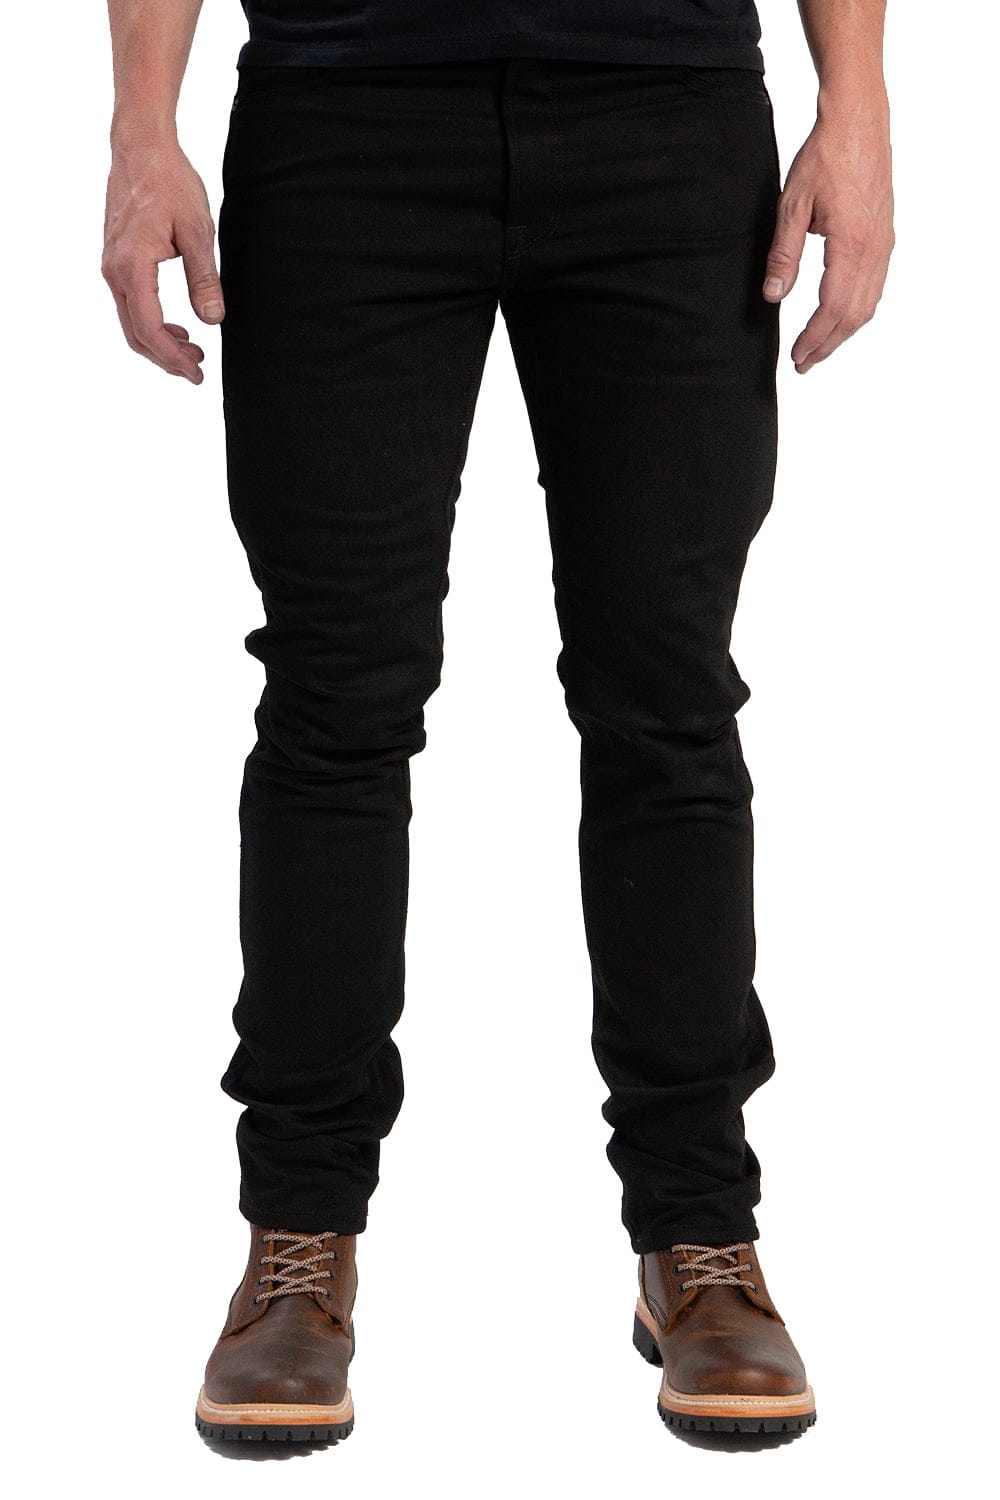 Grand Canyon Motorrad Hose Worker Jeans Black, Textil